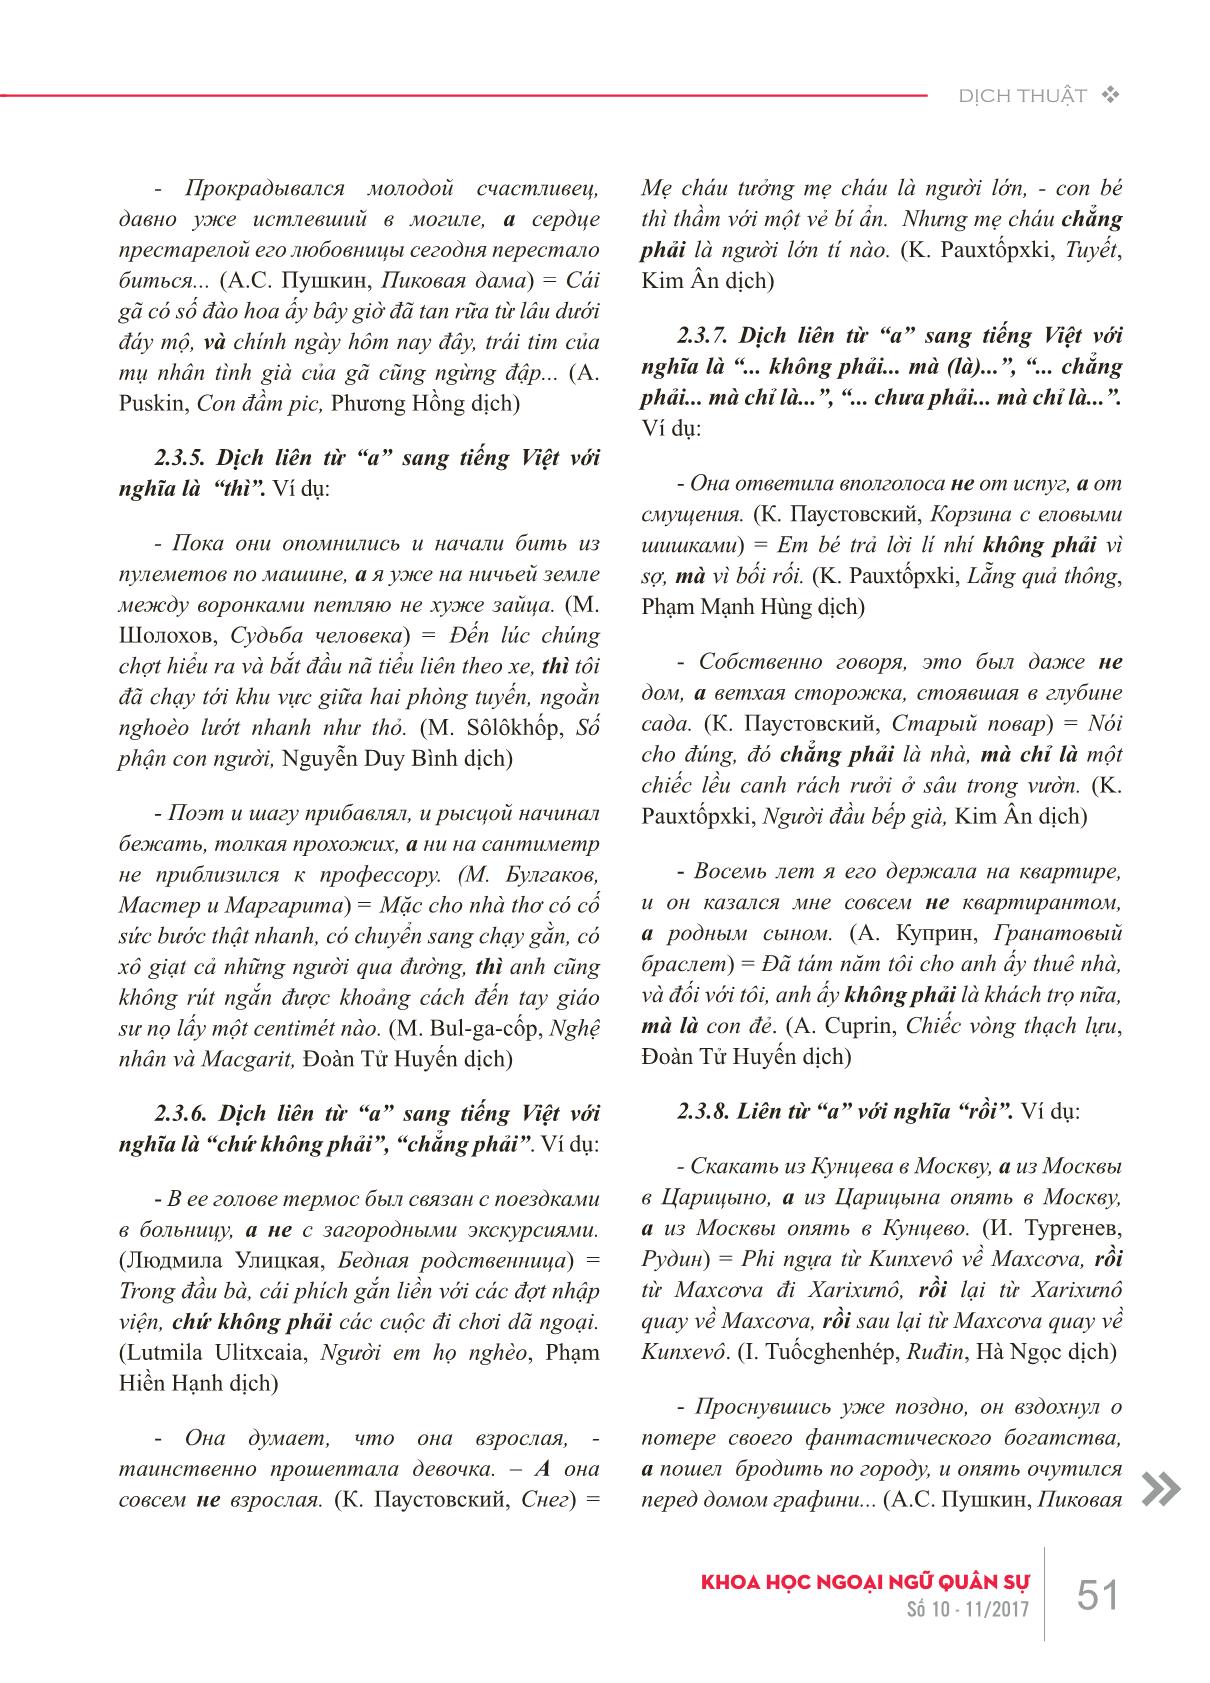 Liên từ kết hợp “a” trong tiếng Nga và các cách truyền đạt sang tiếng Việt trang 6